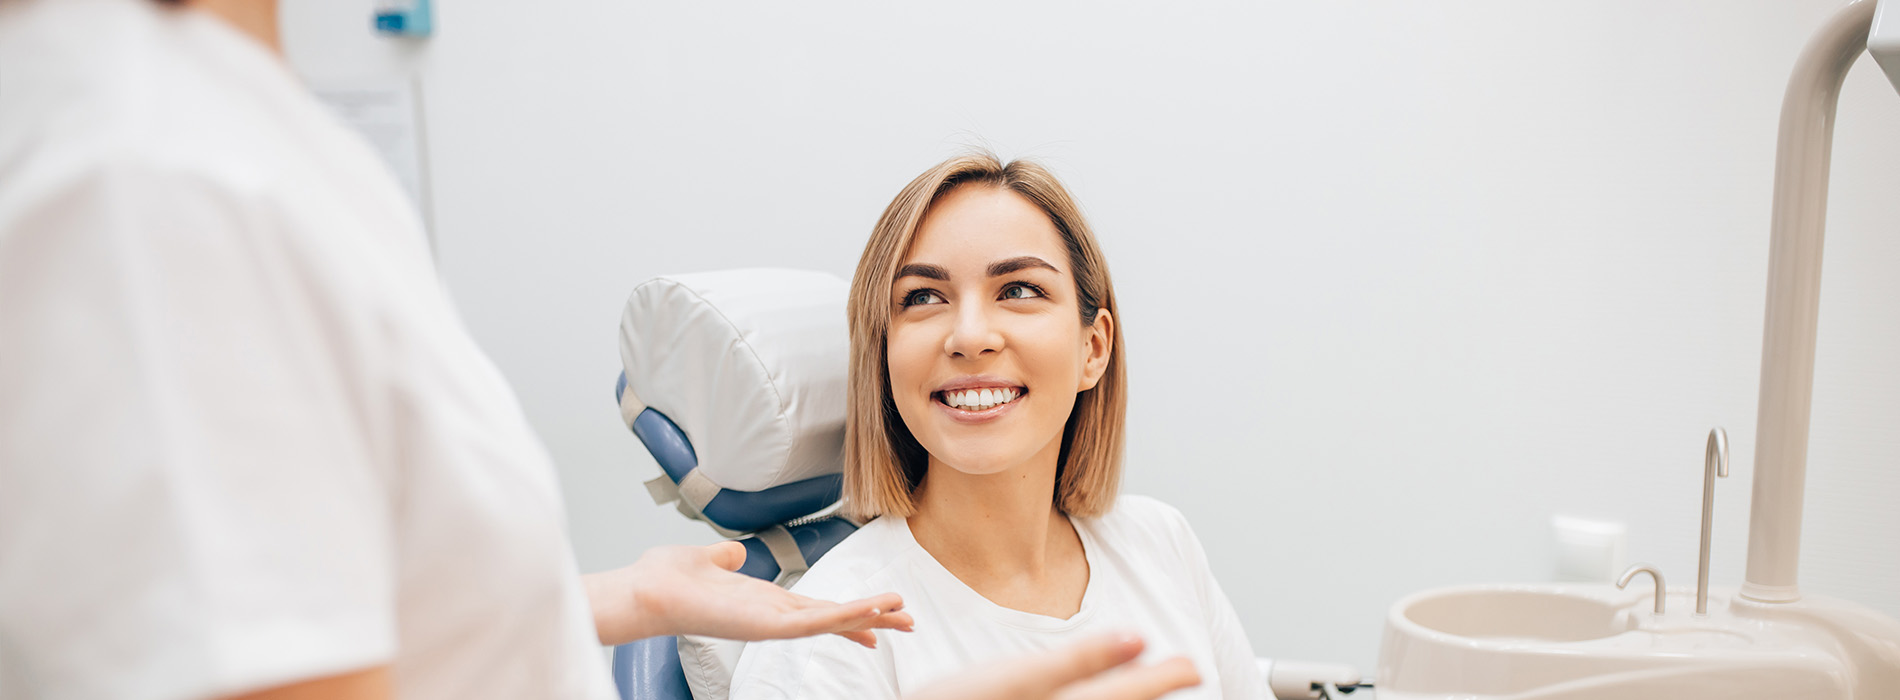 Granger Dentistry | Implant Dentistry, All-on-4 reg  and Invisalign reg 